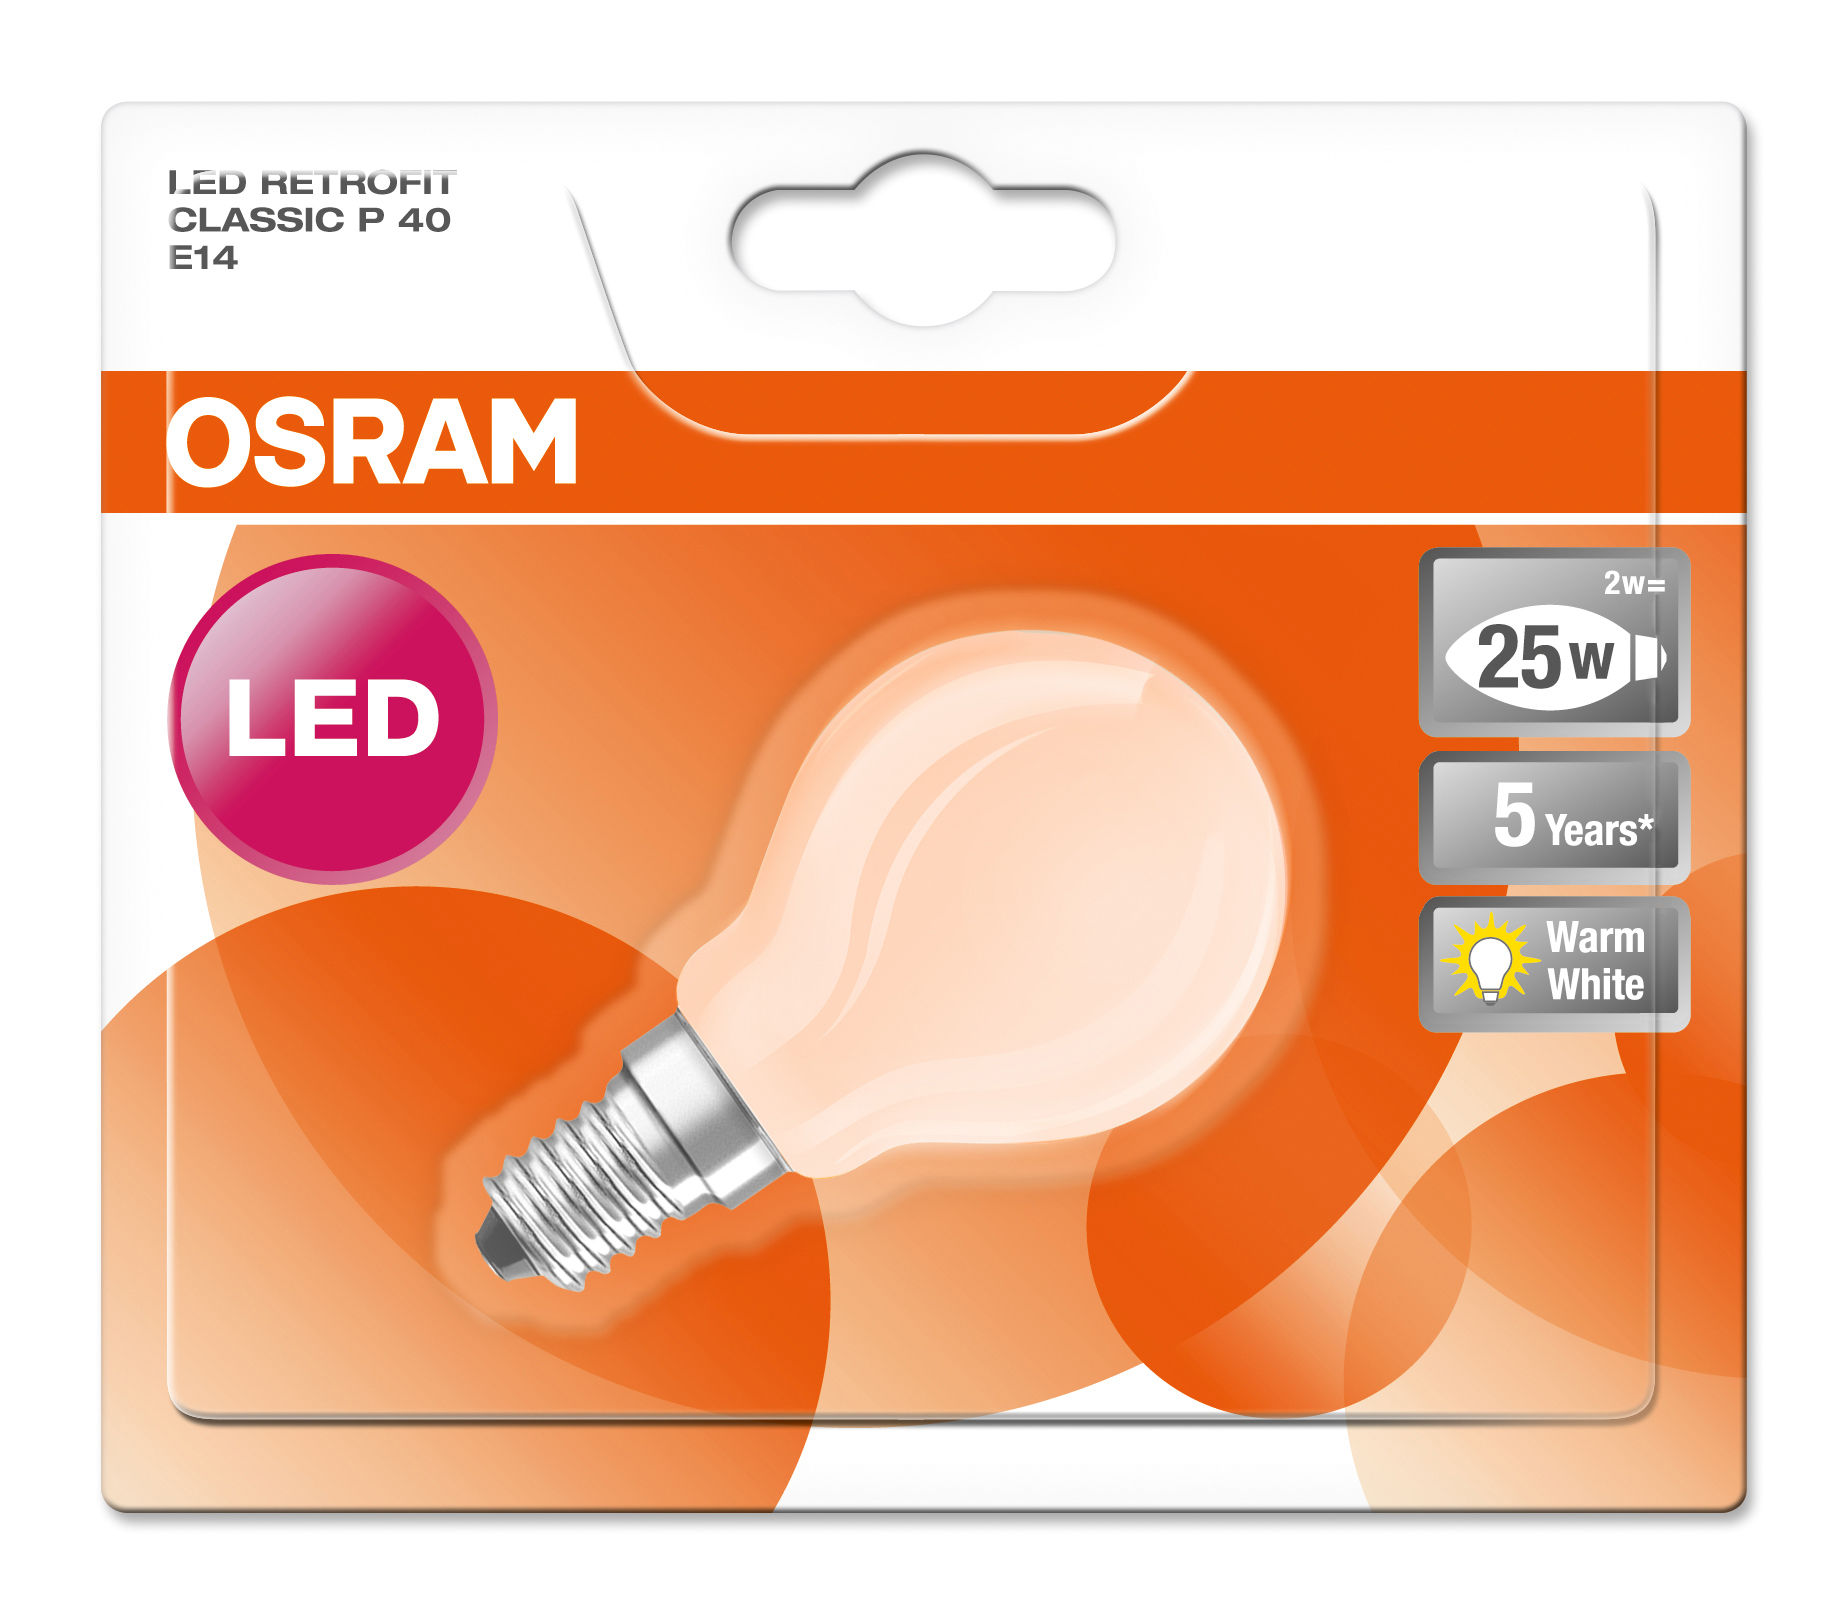 Krisane - ampoule LED E14 d'intérieur (réfrigérateur) 3W blanc